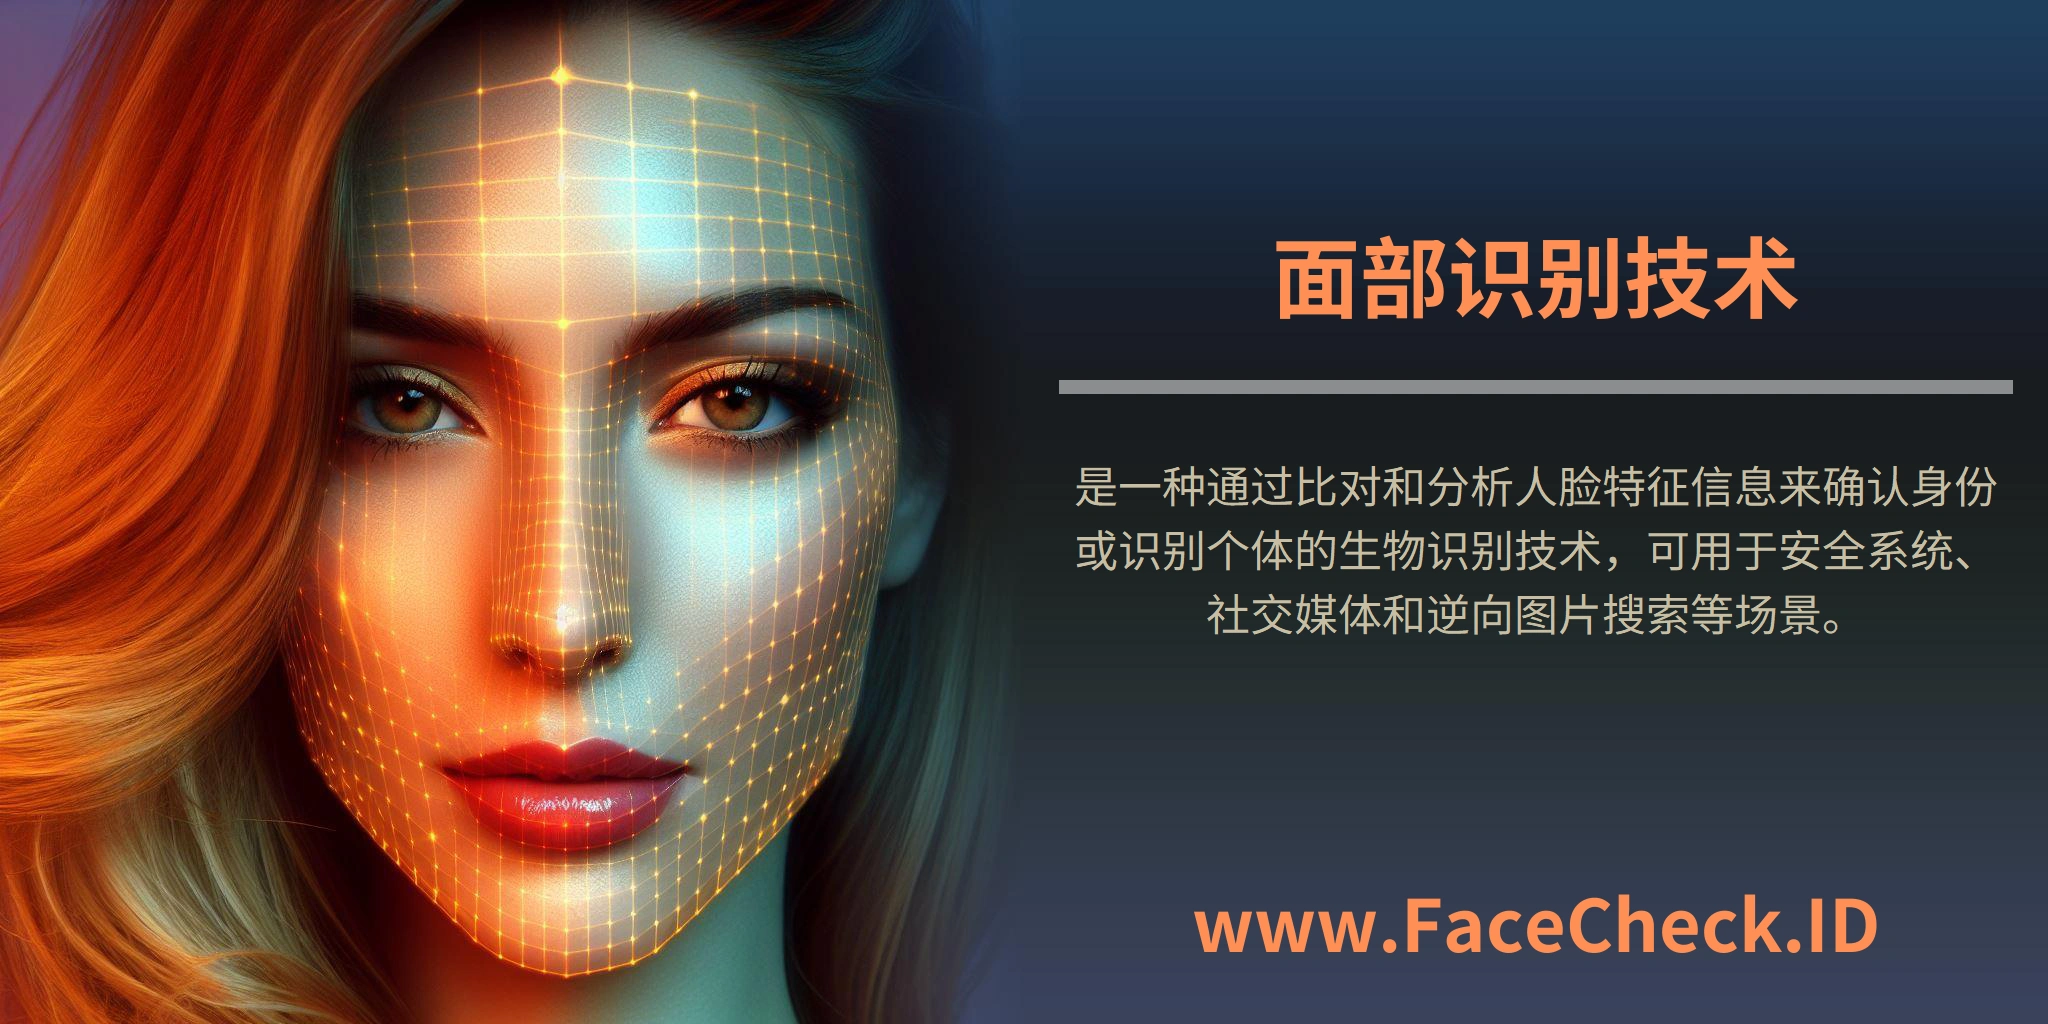 <b>面部识别技术</b>是一种通过比对和分析人脸特征信息来确认身份或识别个体的生物识别技术，可用于安全系统、社交媒体和逆向图片搜索等场景。